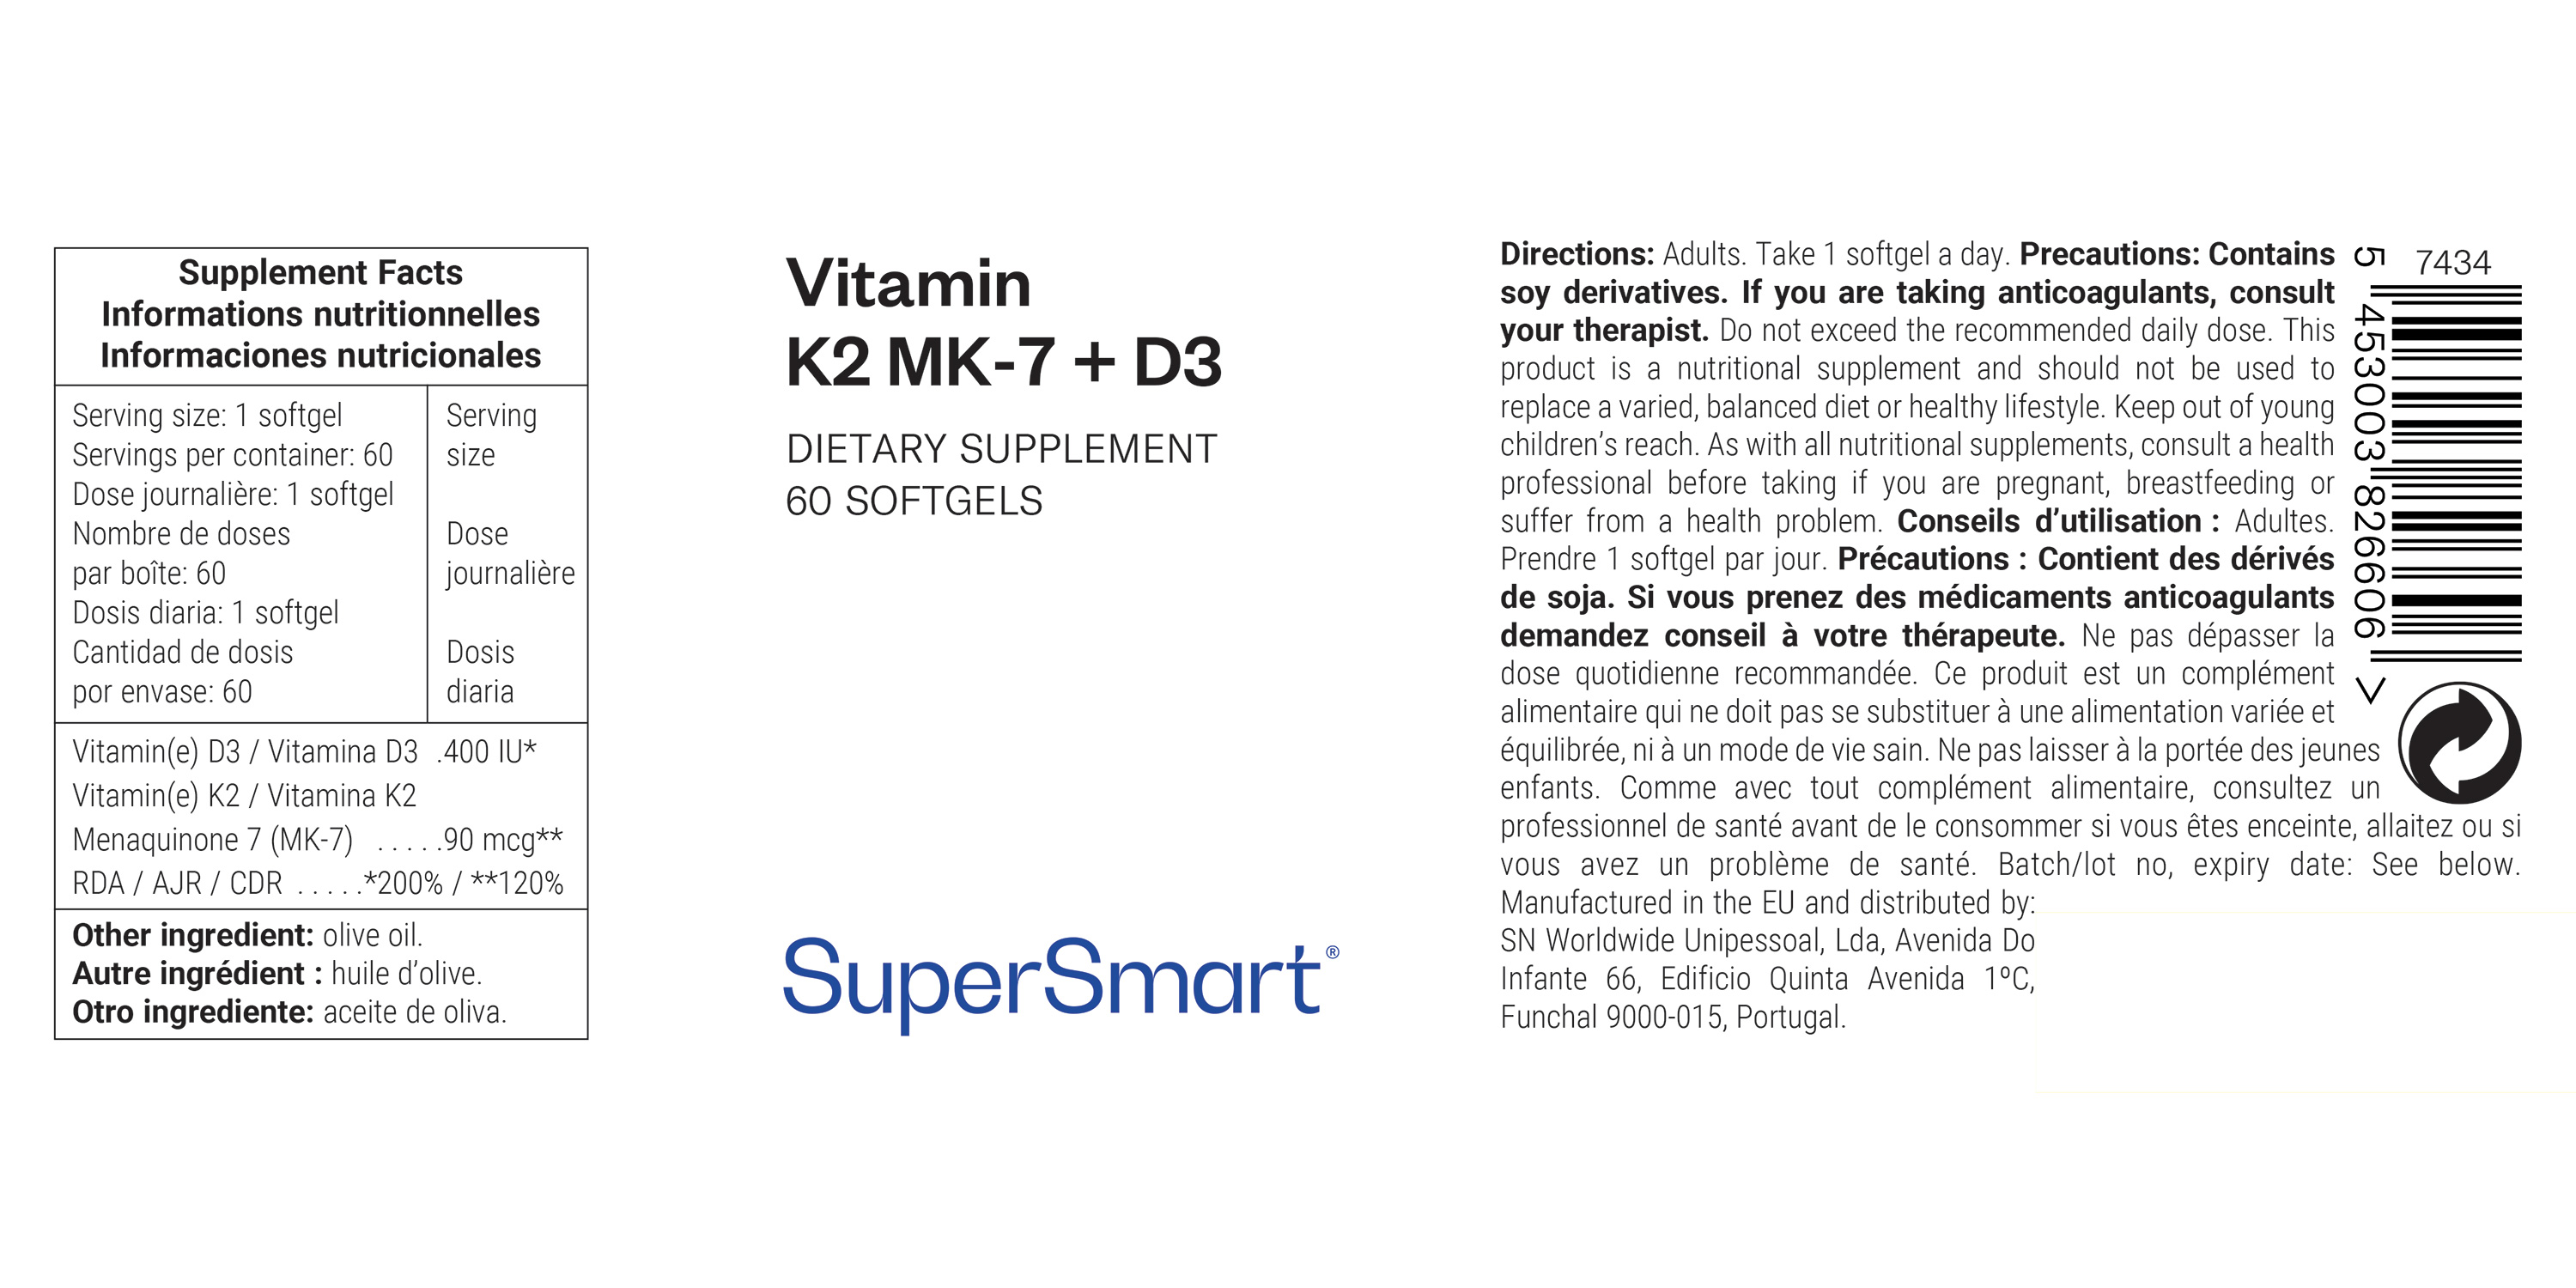 MK-7 90 mcg + Vitamin D3